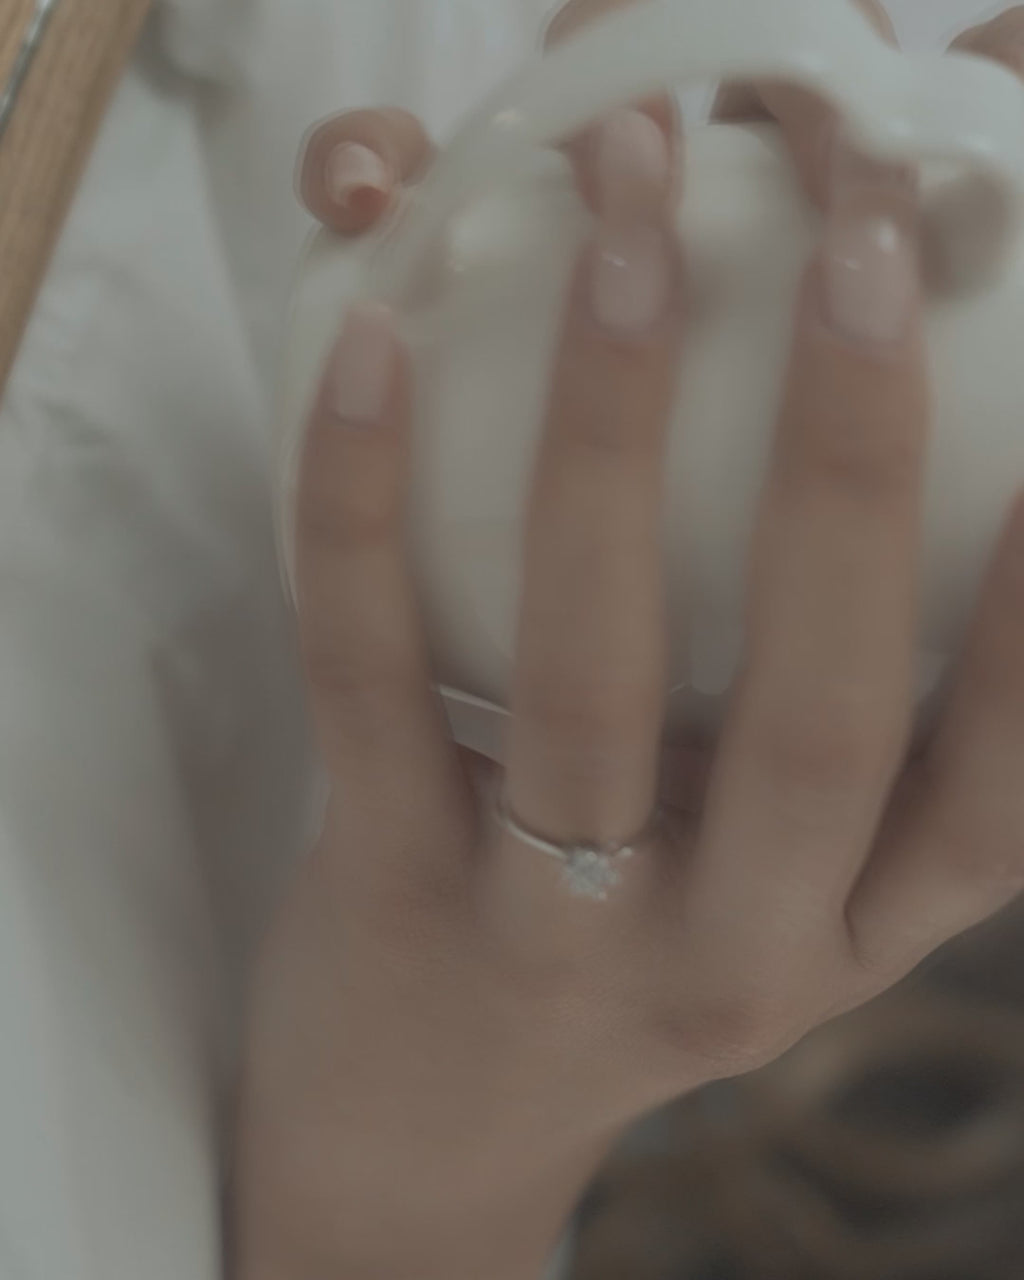 Μονόπετρο δαχτυλίδι γάμου με κεντρικό διαμάντι και πέτρες brilliant περιμετρικά κατασκευασμένο από λευκόχρυσο, φορεμένο σε γυναικέιο χέρι.